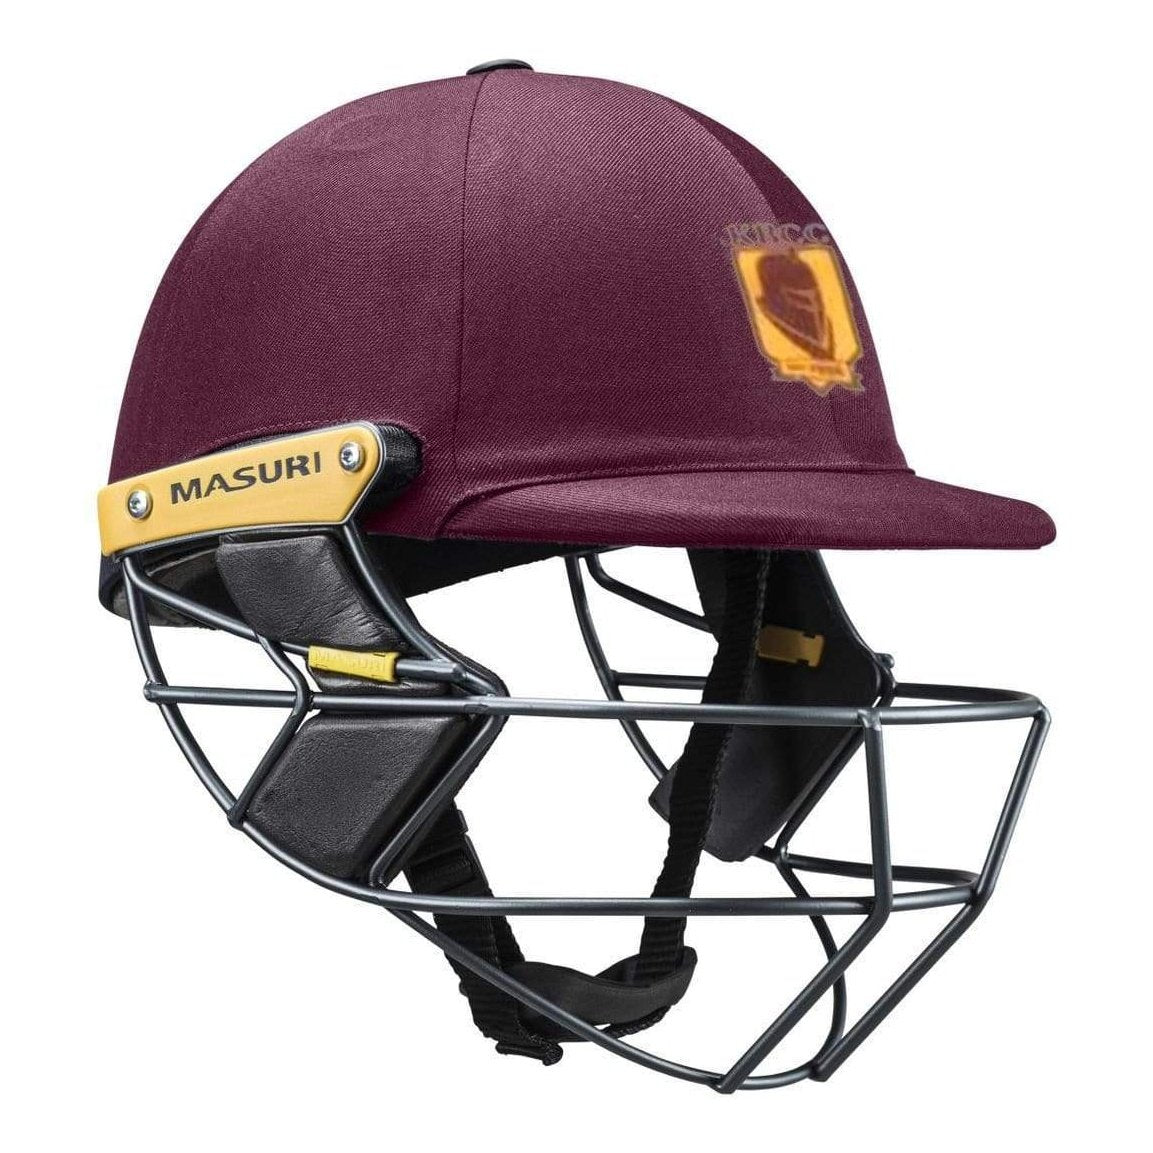 Masuri Club Helmet Kingsville Cricket Club Helmet